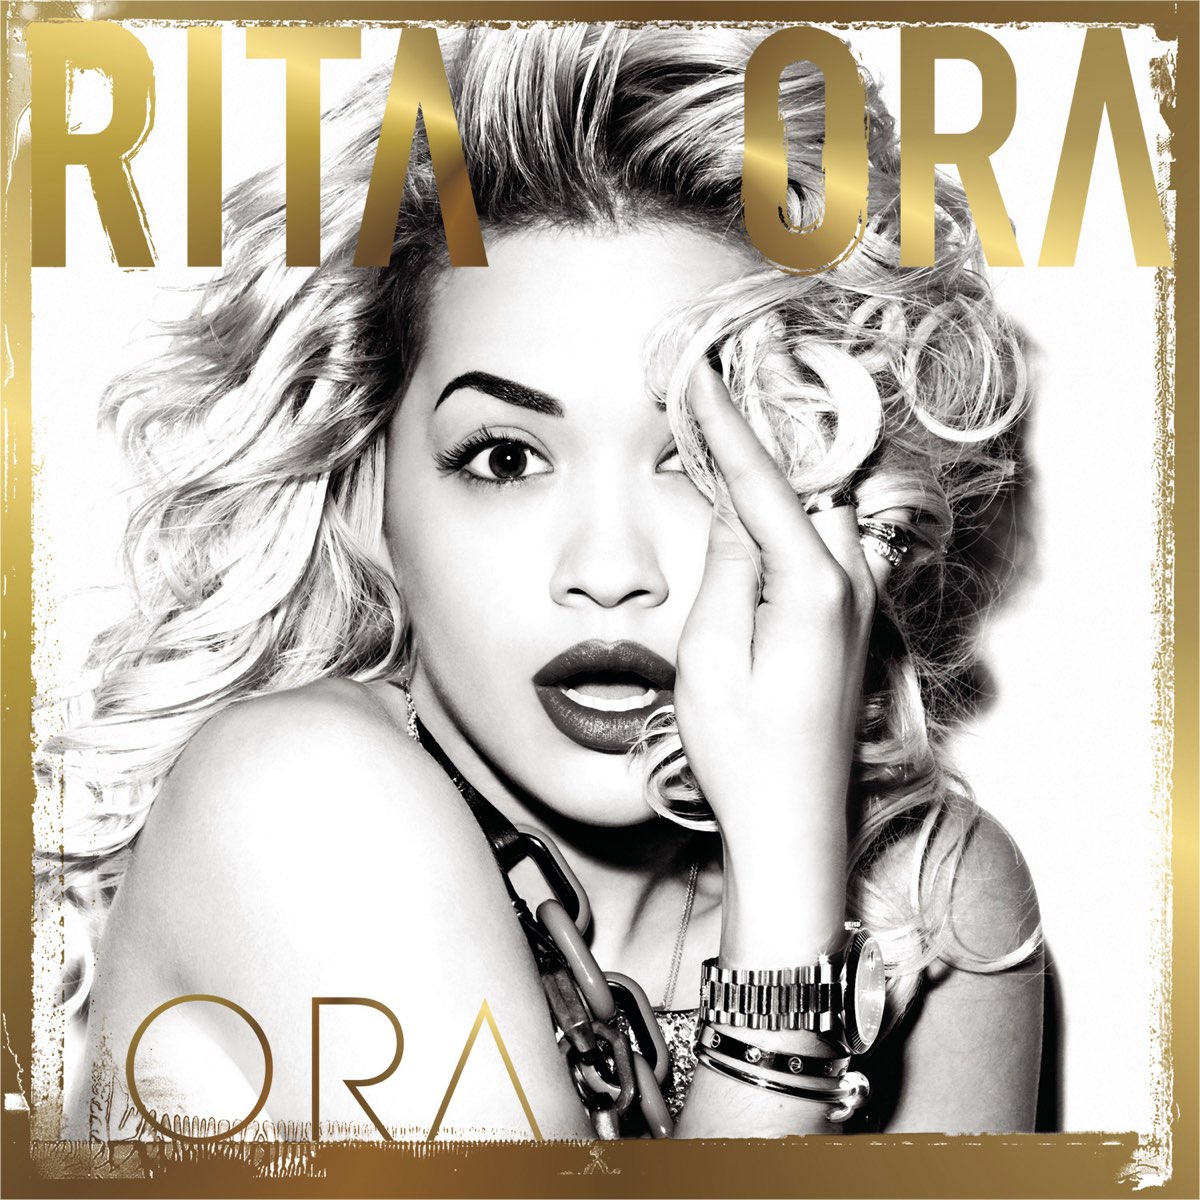 ‎ORA (Deluxe) - Album by Rita Ora - Apple Music